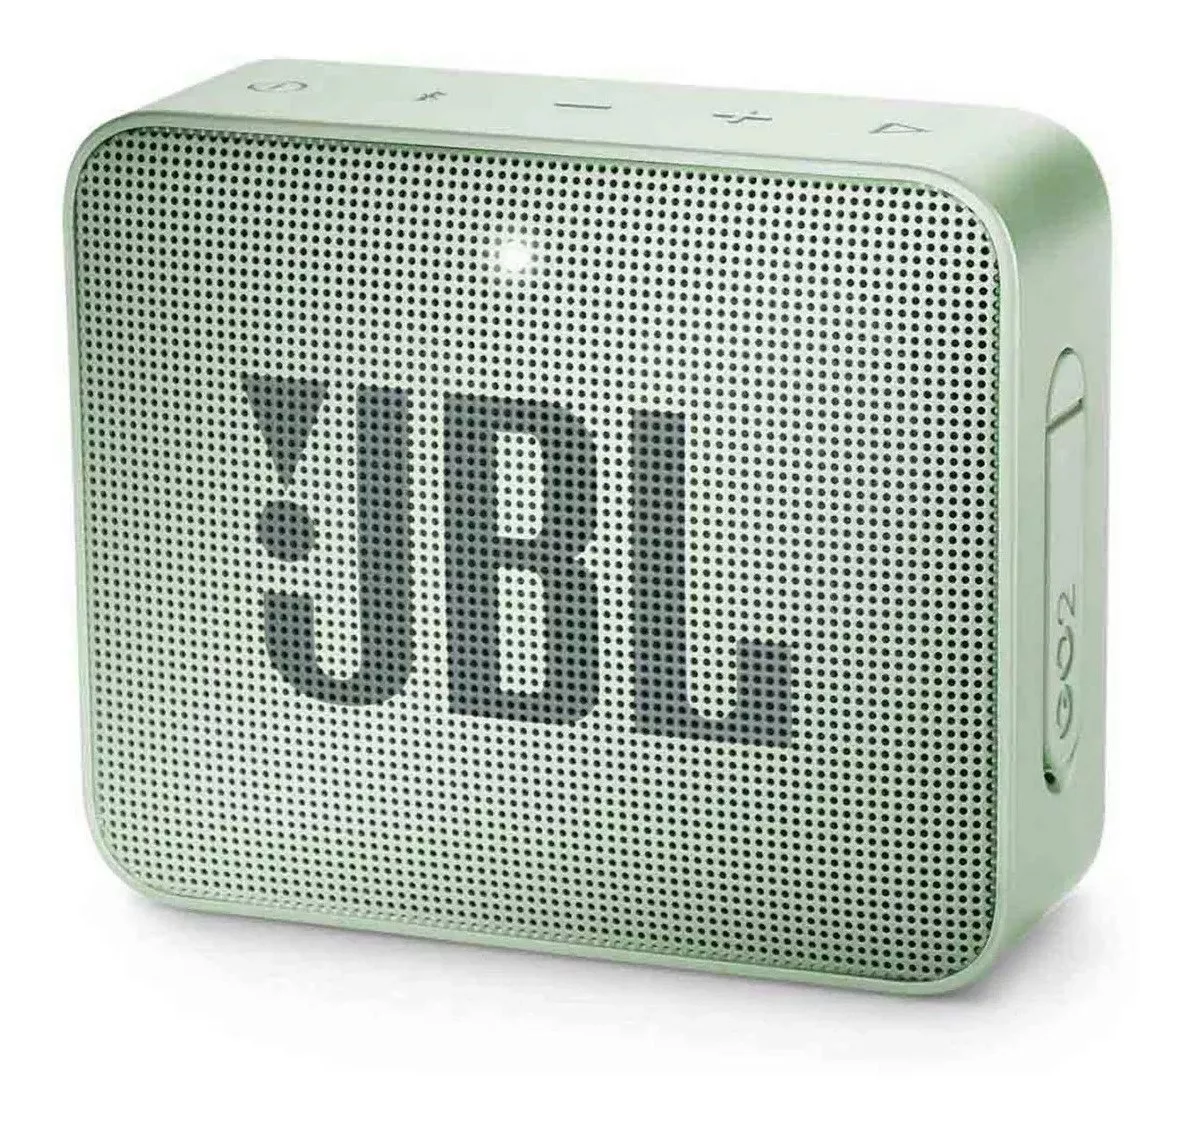 Alto-falante Jbl Go 2 Portátil Com Bluetooth Seafoam Mint 